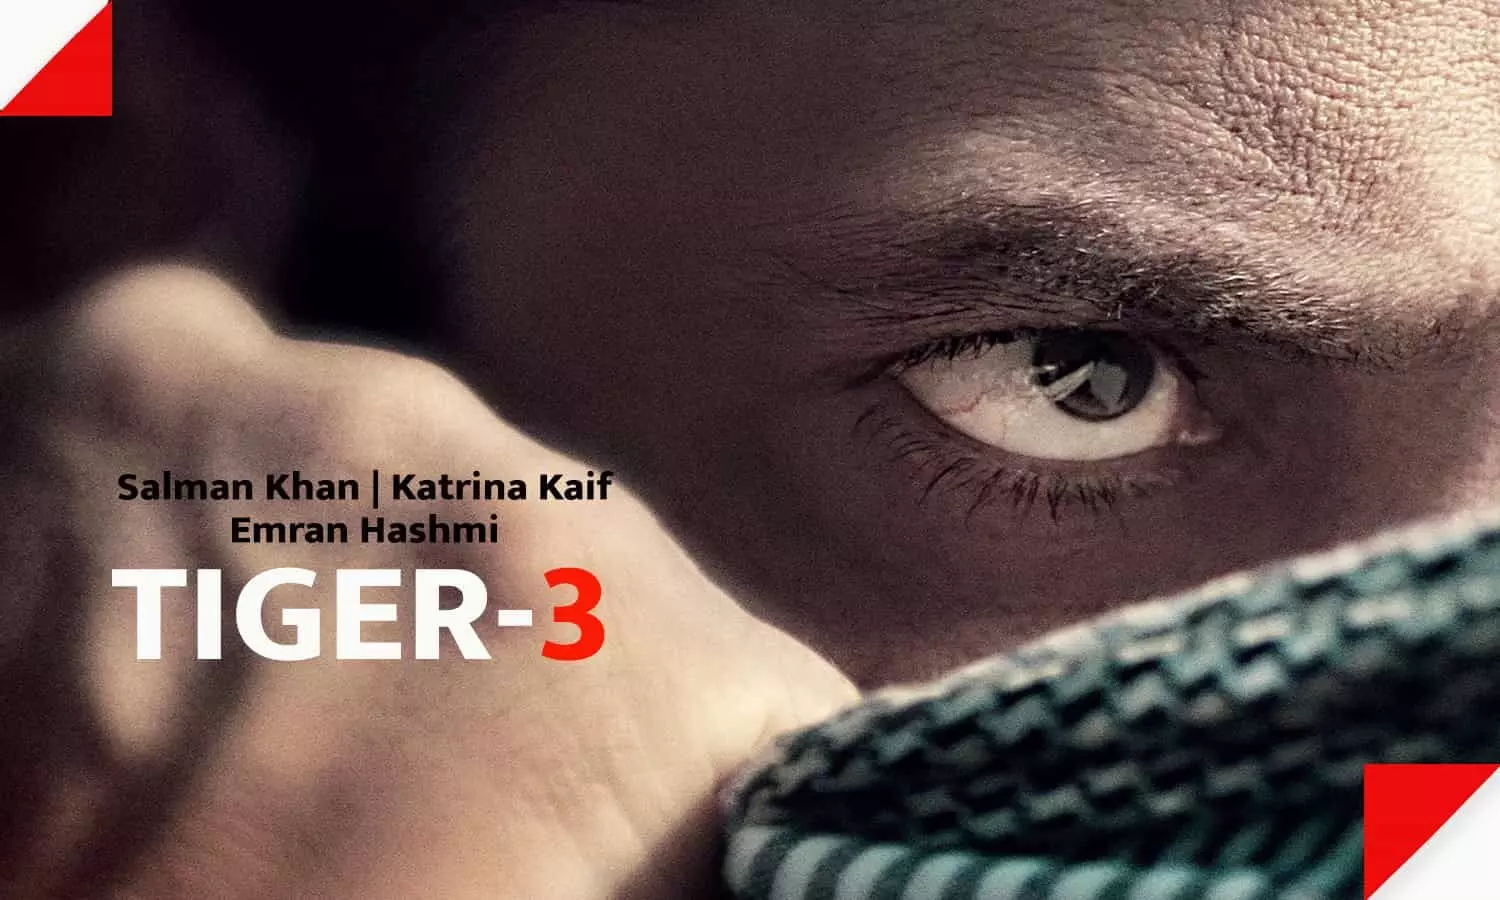 Tiger 3 Release Date: ईद नहीं, इस त्योहार को रिलीज होगी सलमान खान-कटरीना कैफ की फिल्म टाइगर-3